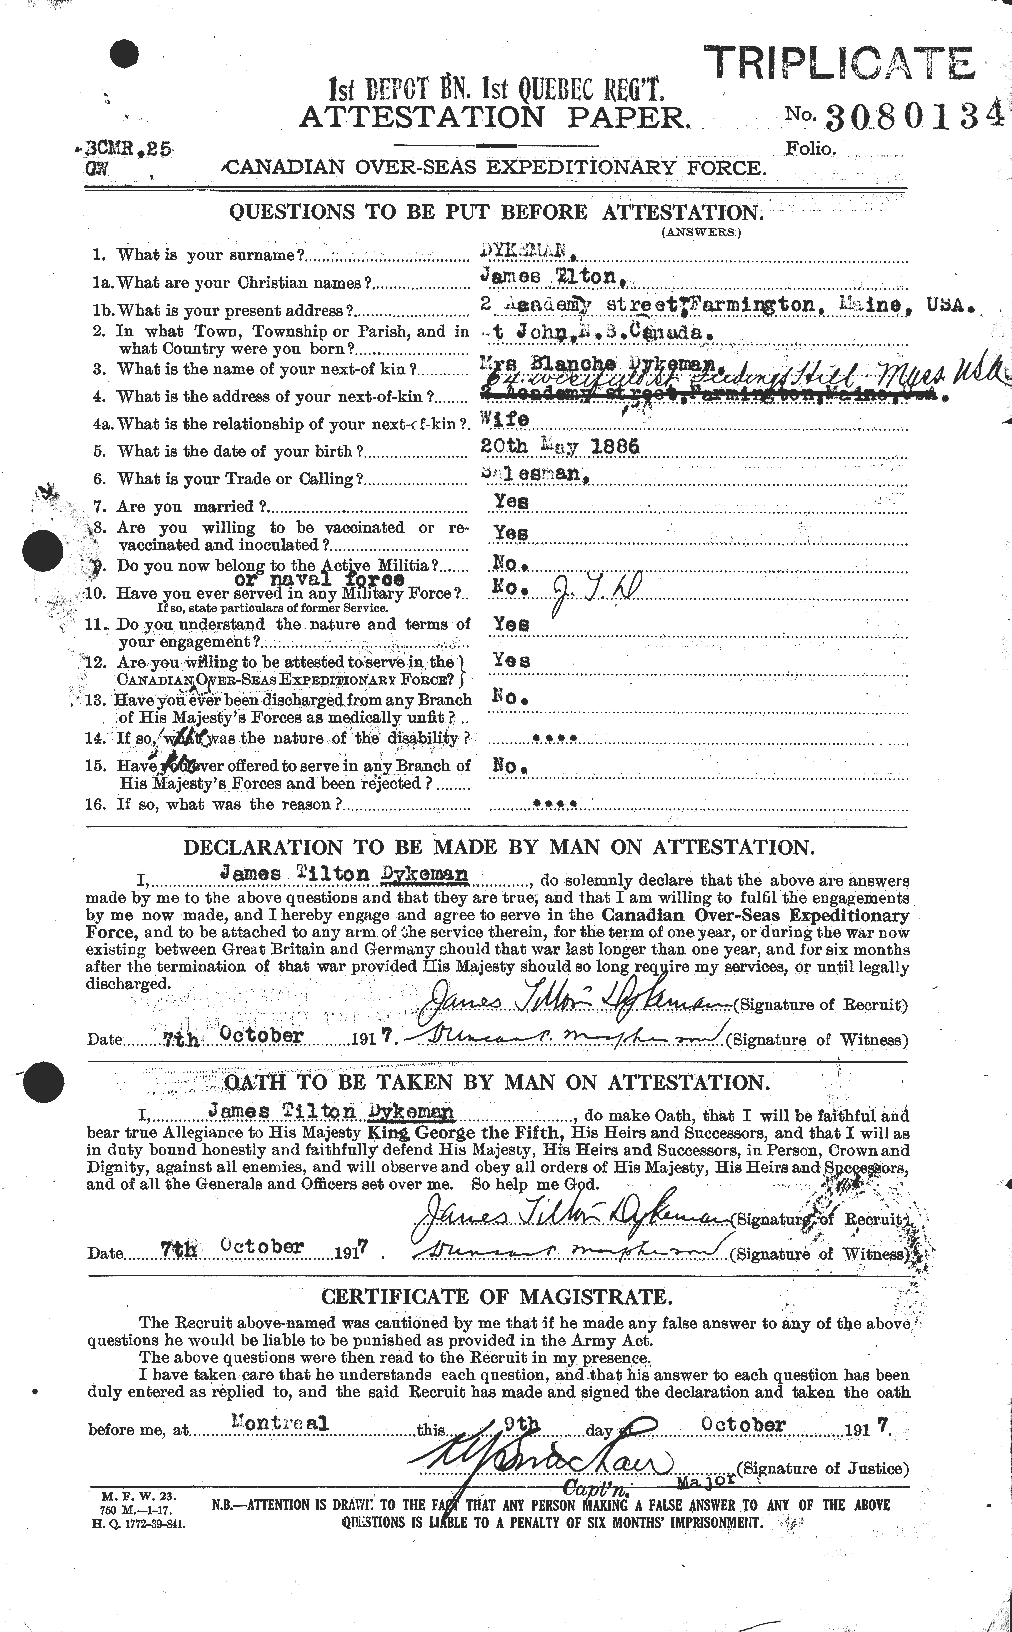 Dossiers du Personnel de la Première Guerre mondiale - CEC 307257a